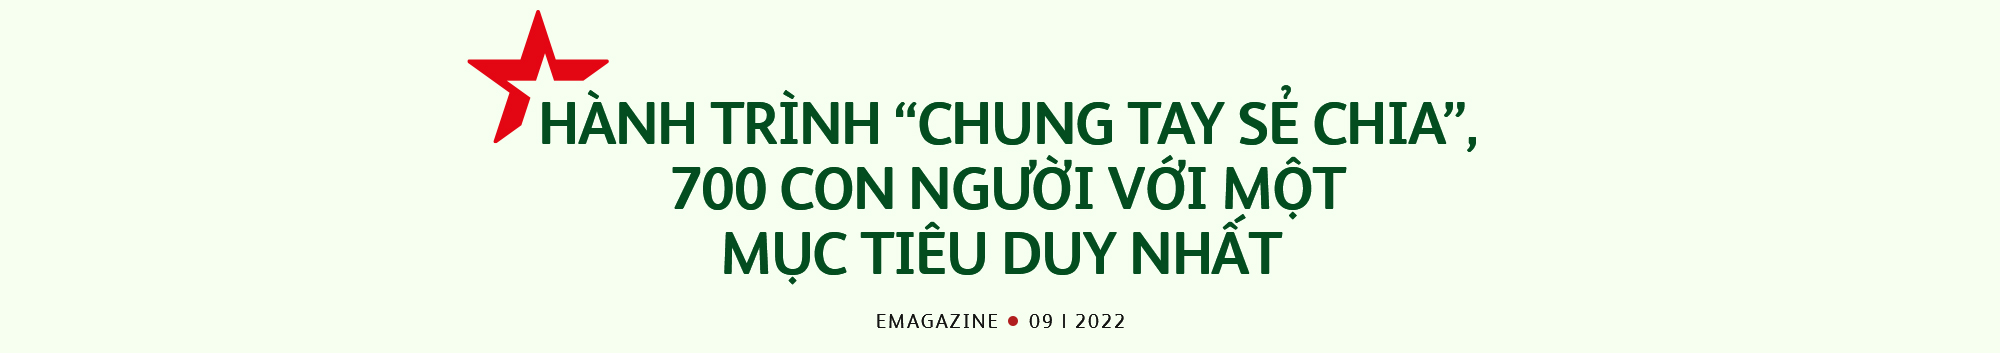 Hành trình “chung tay sẻ chia” đến khắp mọi miền của hơn 700 nhân viên Heineken Việt Nam - Ảnh 4.